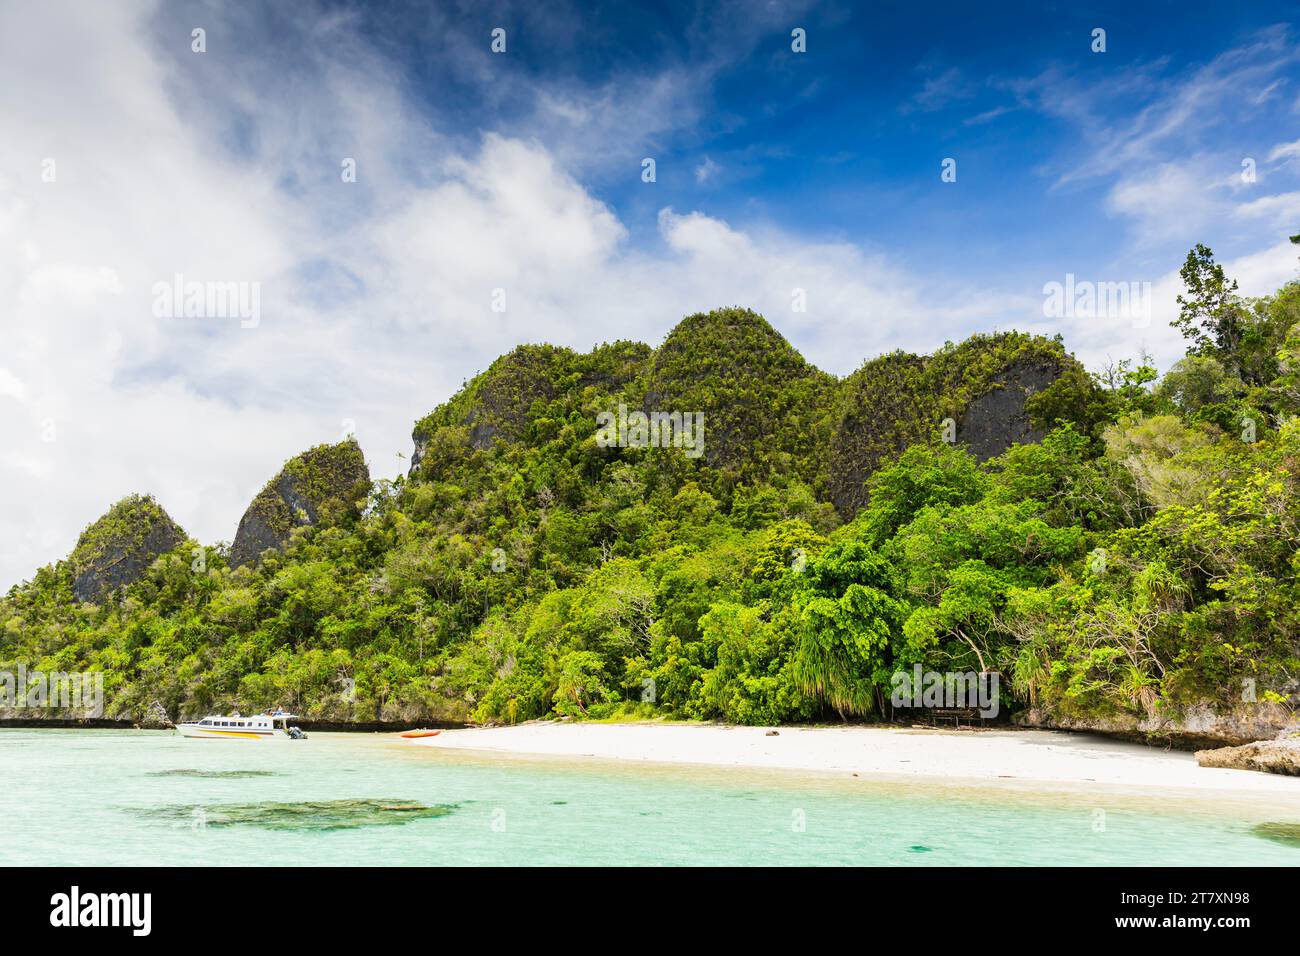 Une vue des îlots couverts de végétation de l'intérieur du port naturel protégé de Wayag Bay, Raja Ampat, Indonésie, Asie du Sud-est, Asie Banque D'Images